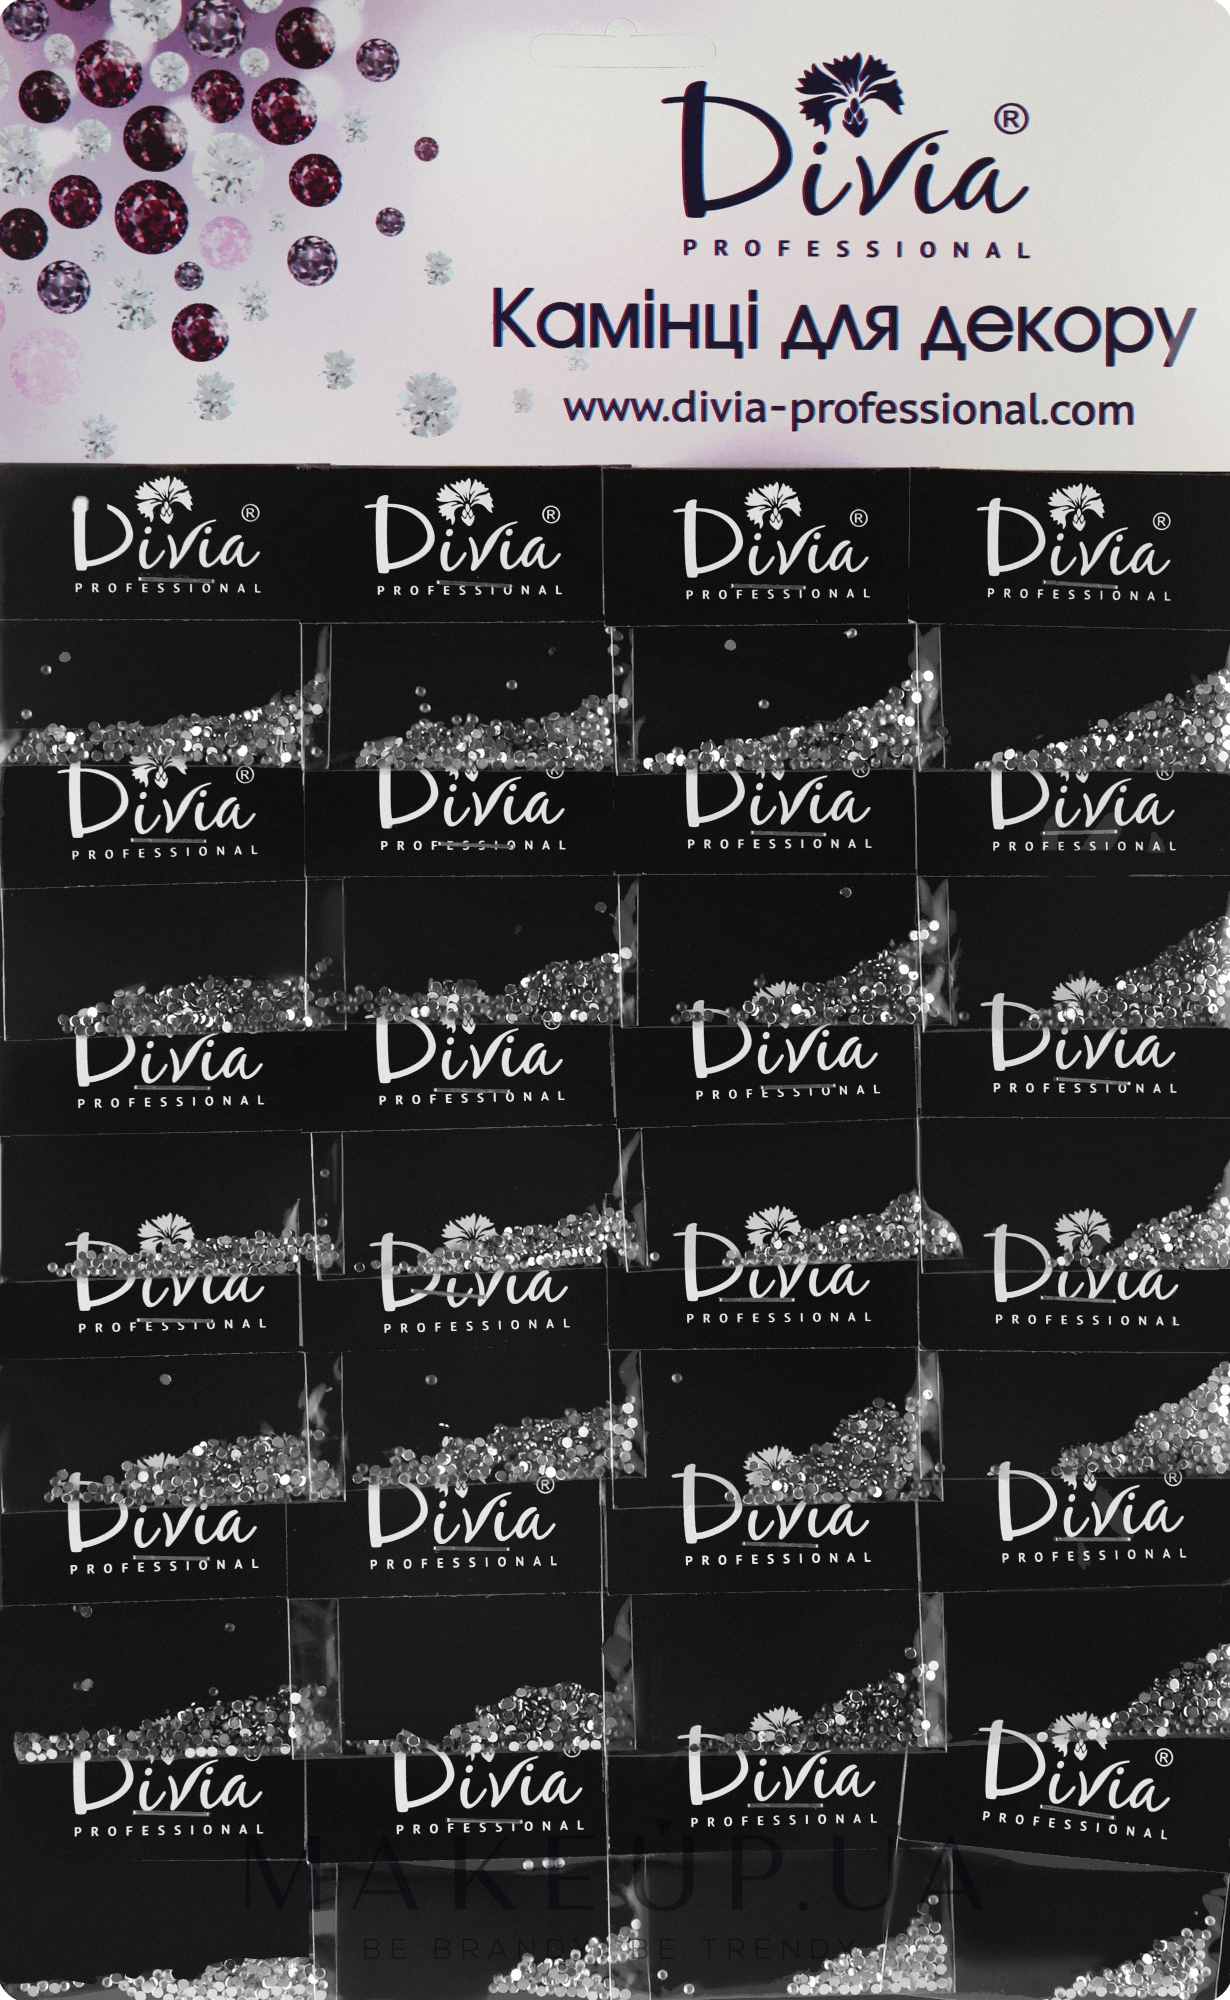 Камінці для декору, сріблясті великі, на планшеті, Di850 - Divia Professional — фото 1уп